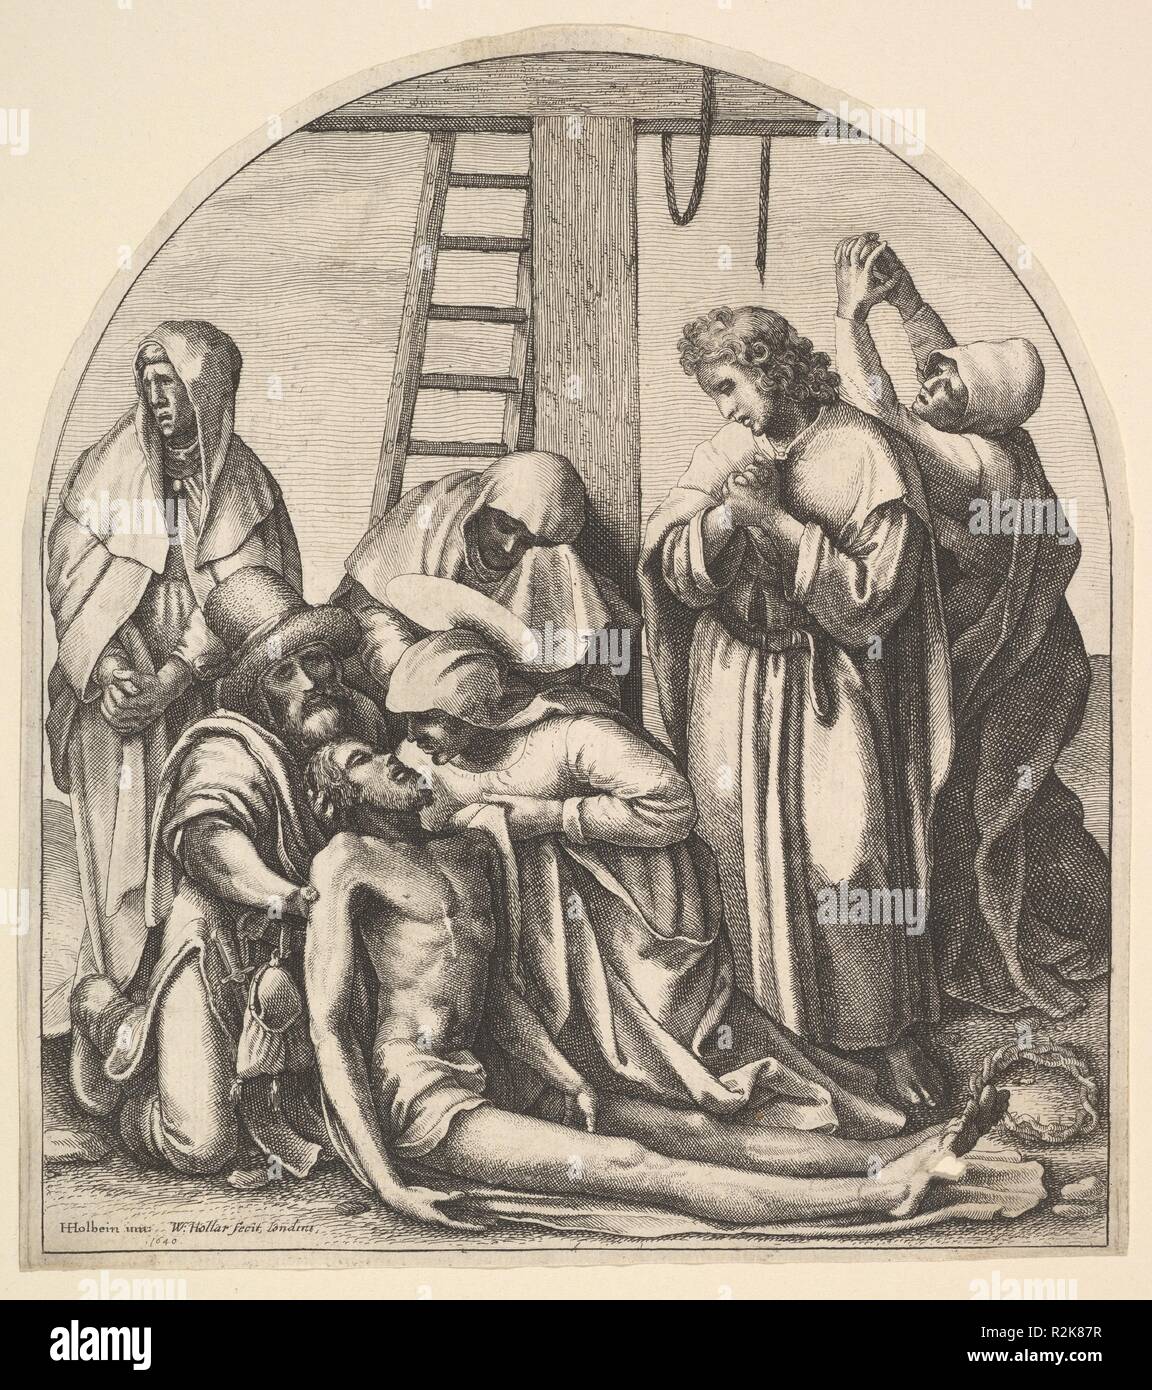 Discesa dalla Croce, dopo Holbein. Artista: Dopo Hans Holbein il Giovane (tedesco, Augsburg 1497/98-1543 Londra); Wenceslaus Hollar (boemo, Praga 1607-1677 Londra). Dimensioni: 7 3/4 x 6 7/8 in. (19,7 x 17,5 cm). Data: 1640. Discesa dalla Croce; Giuseppe di Arimatea e la Vergine Maria in ginocchio, sostenere il corpo di Cristo, San Giovanni in piedi a destra, assieme a tre donne di pianto, accanto alla croce e la scaletta; dopo Hans Holbein il Giovane. Museo: Metropolitan Museum of Art di New York, Stati Uniti d'America. Foto Stock